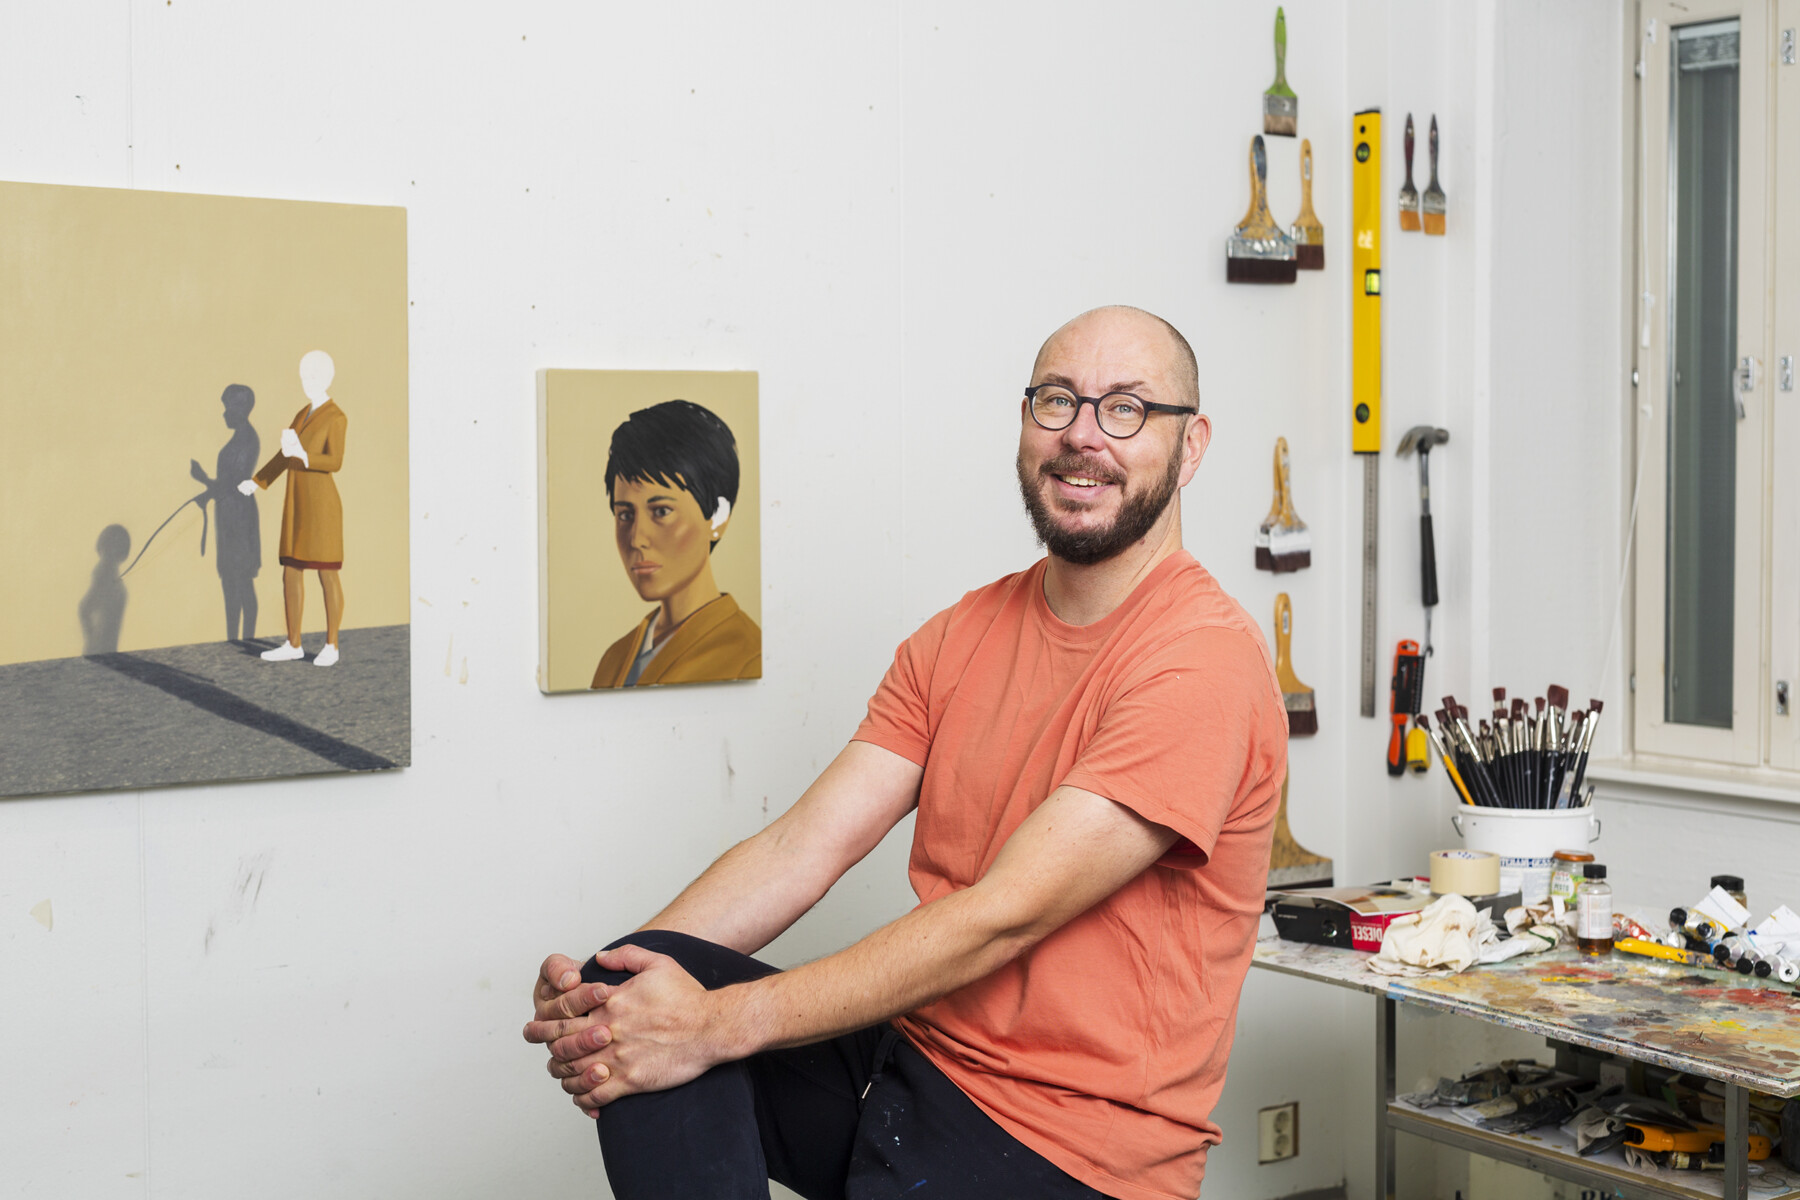 Un hombre posa sentado en un estudio de arte, rodeado de pinceles, herramientas y cuadros colgados en la pared.